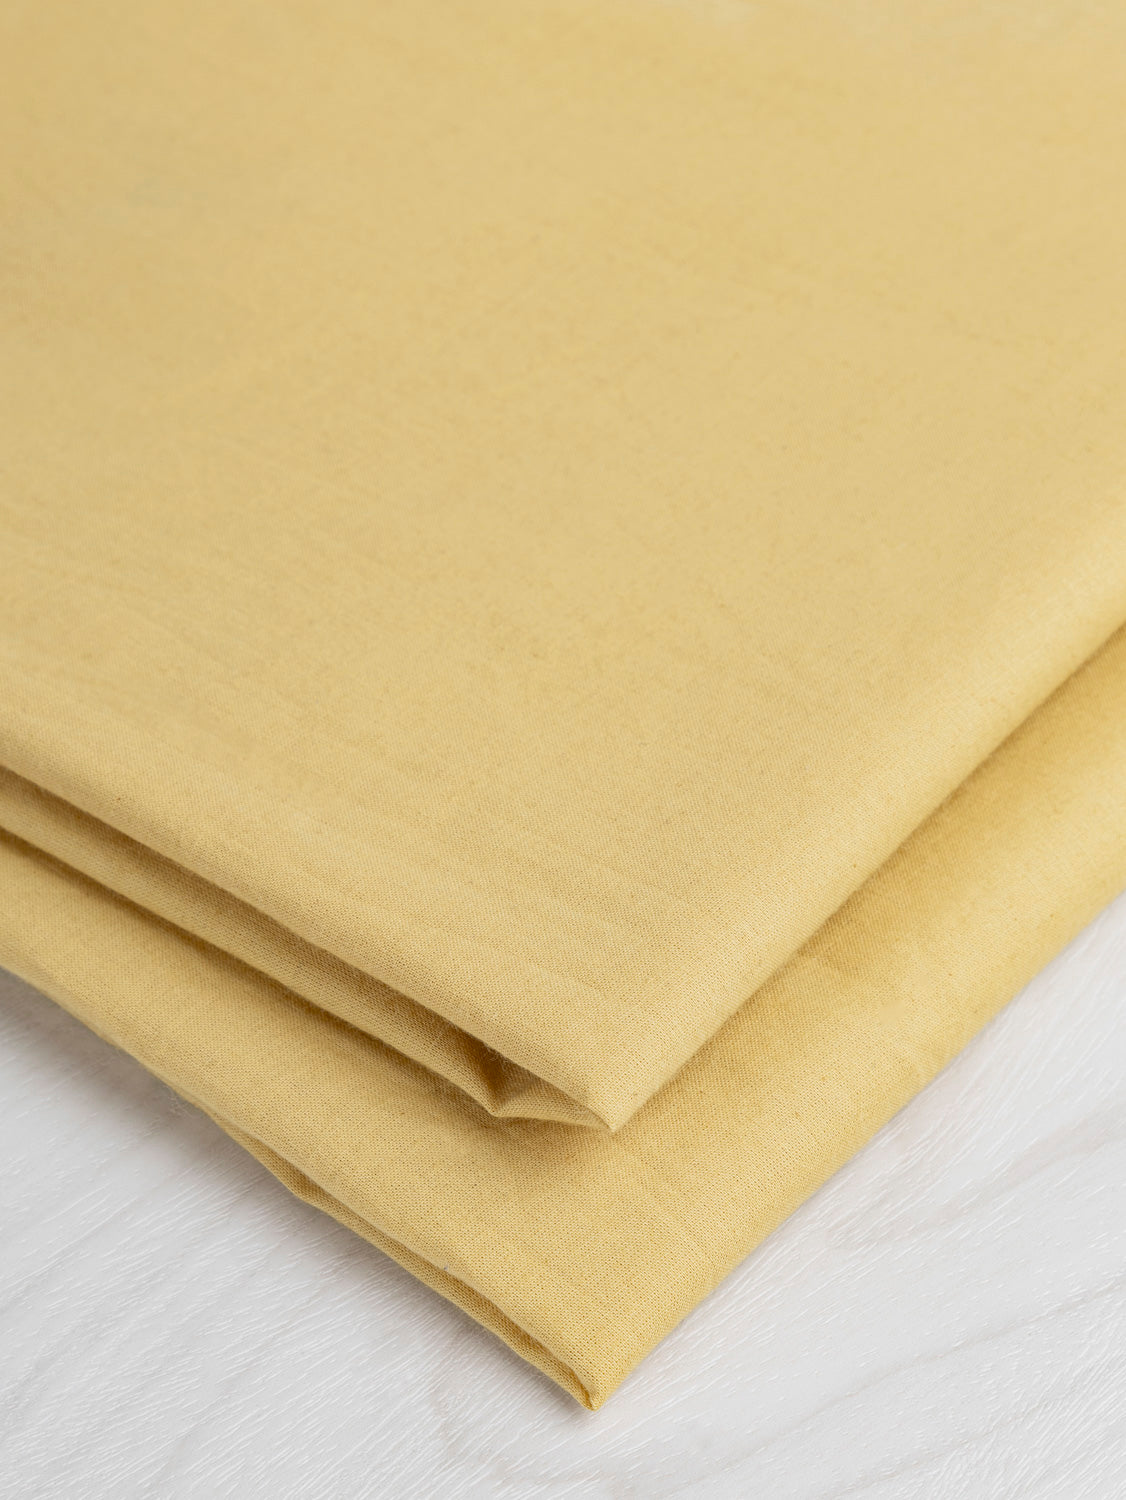 Naturally Dyed Organic Cotton Batiste - Yellow | Core Fabrics